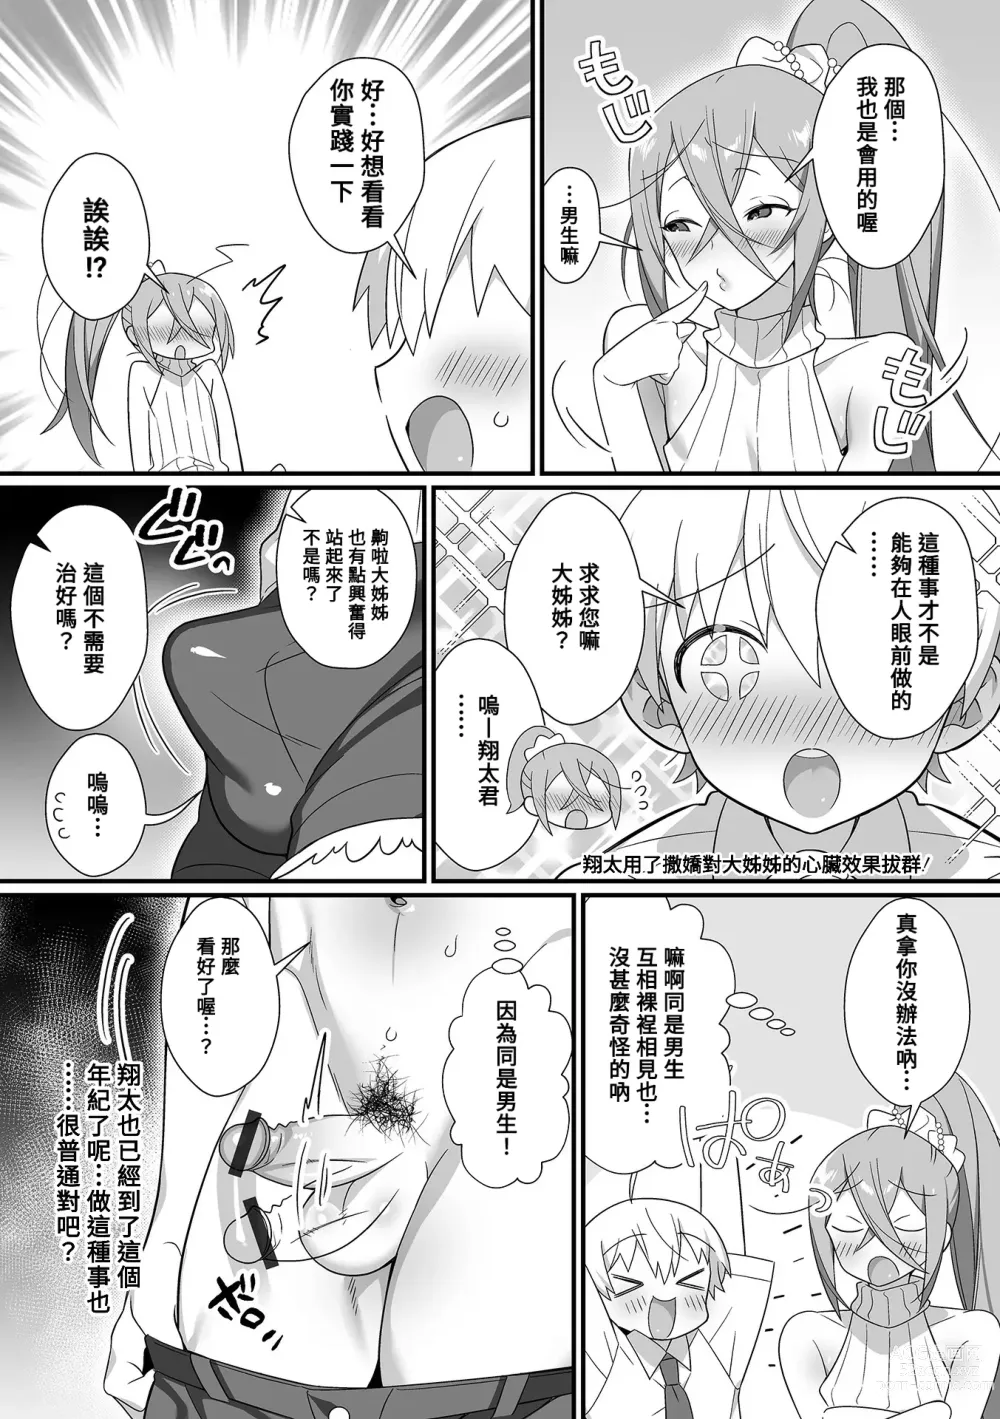 Page 4 of manga Kireina Onesan♂ wa Sukidesuka?